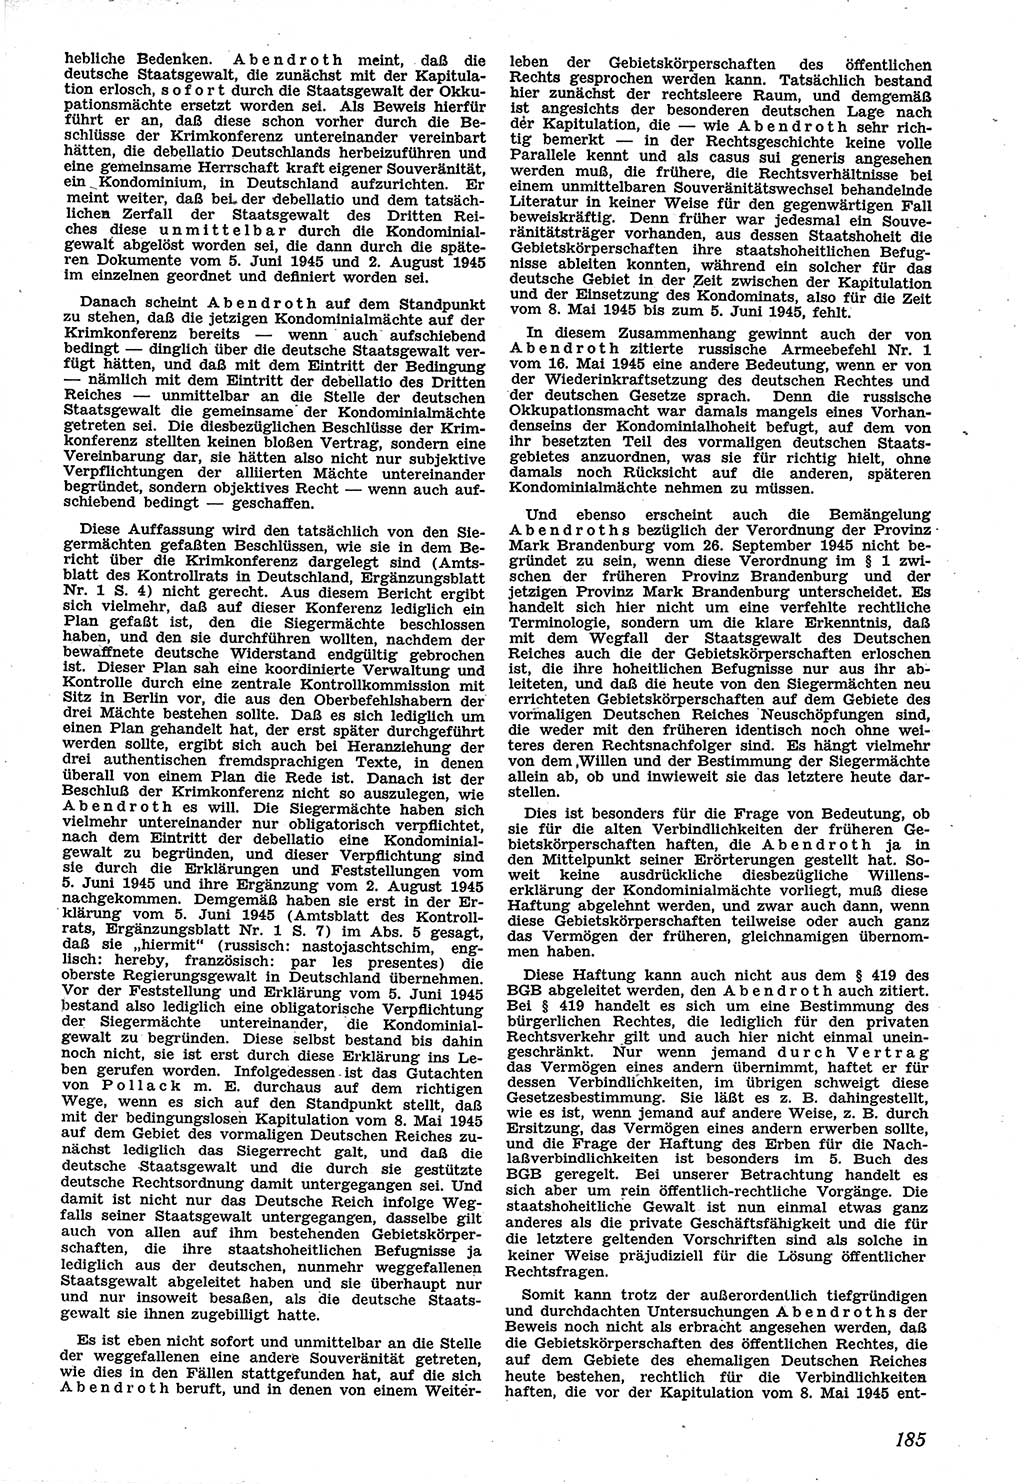 Neue Justiz (NJ), Zeitschrift für Recht und Rechtswissenschaft [Sowjetische Besatzungszone (SBZ) Deutschland], 1. Jahrgang 1947, Seite 185 (NJ SBZ Dtl. 1947, S. 185)